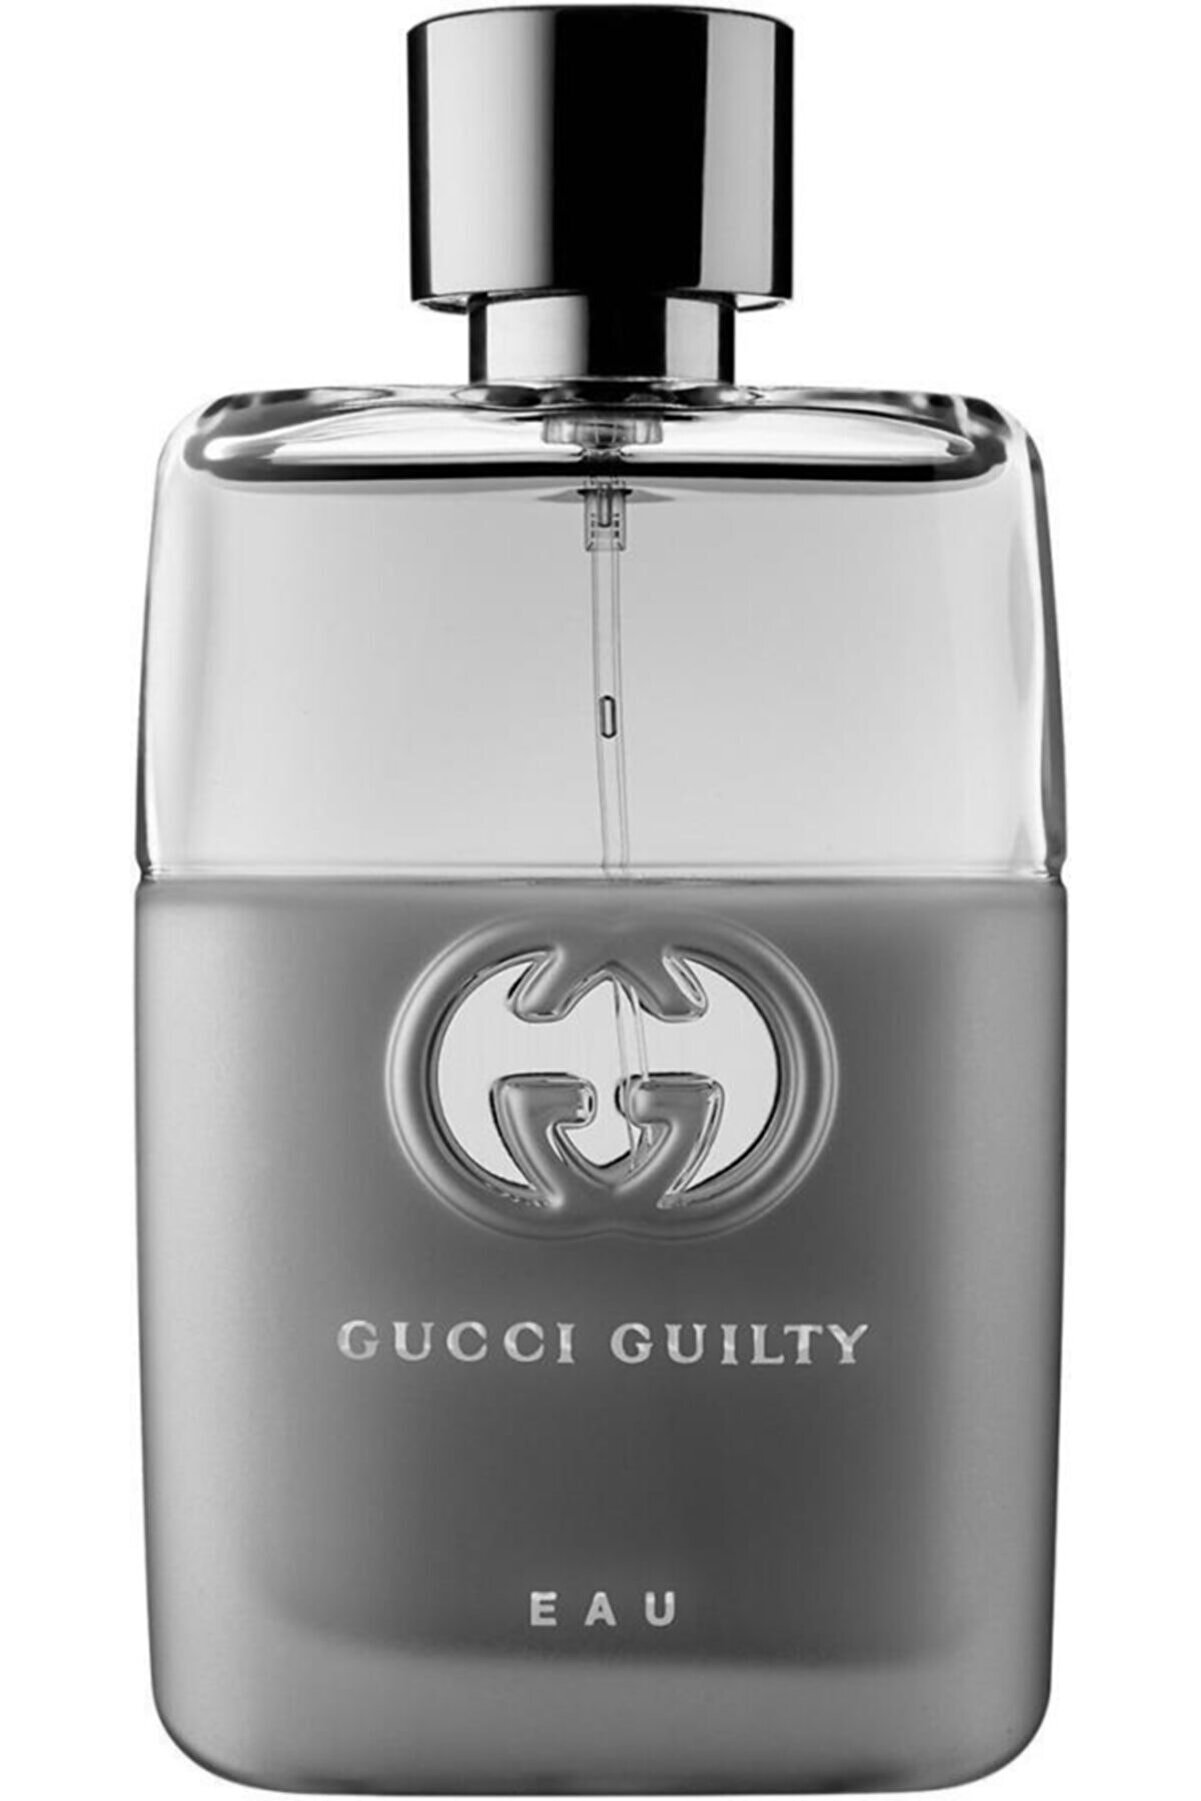 Gucci Erkek Guilty Eau Pour Homme Edt 90 ml  Parfüm 730870175996